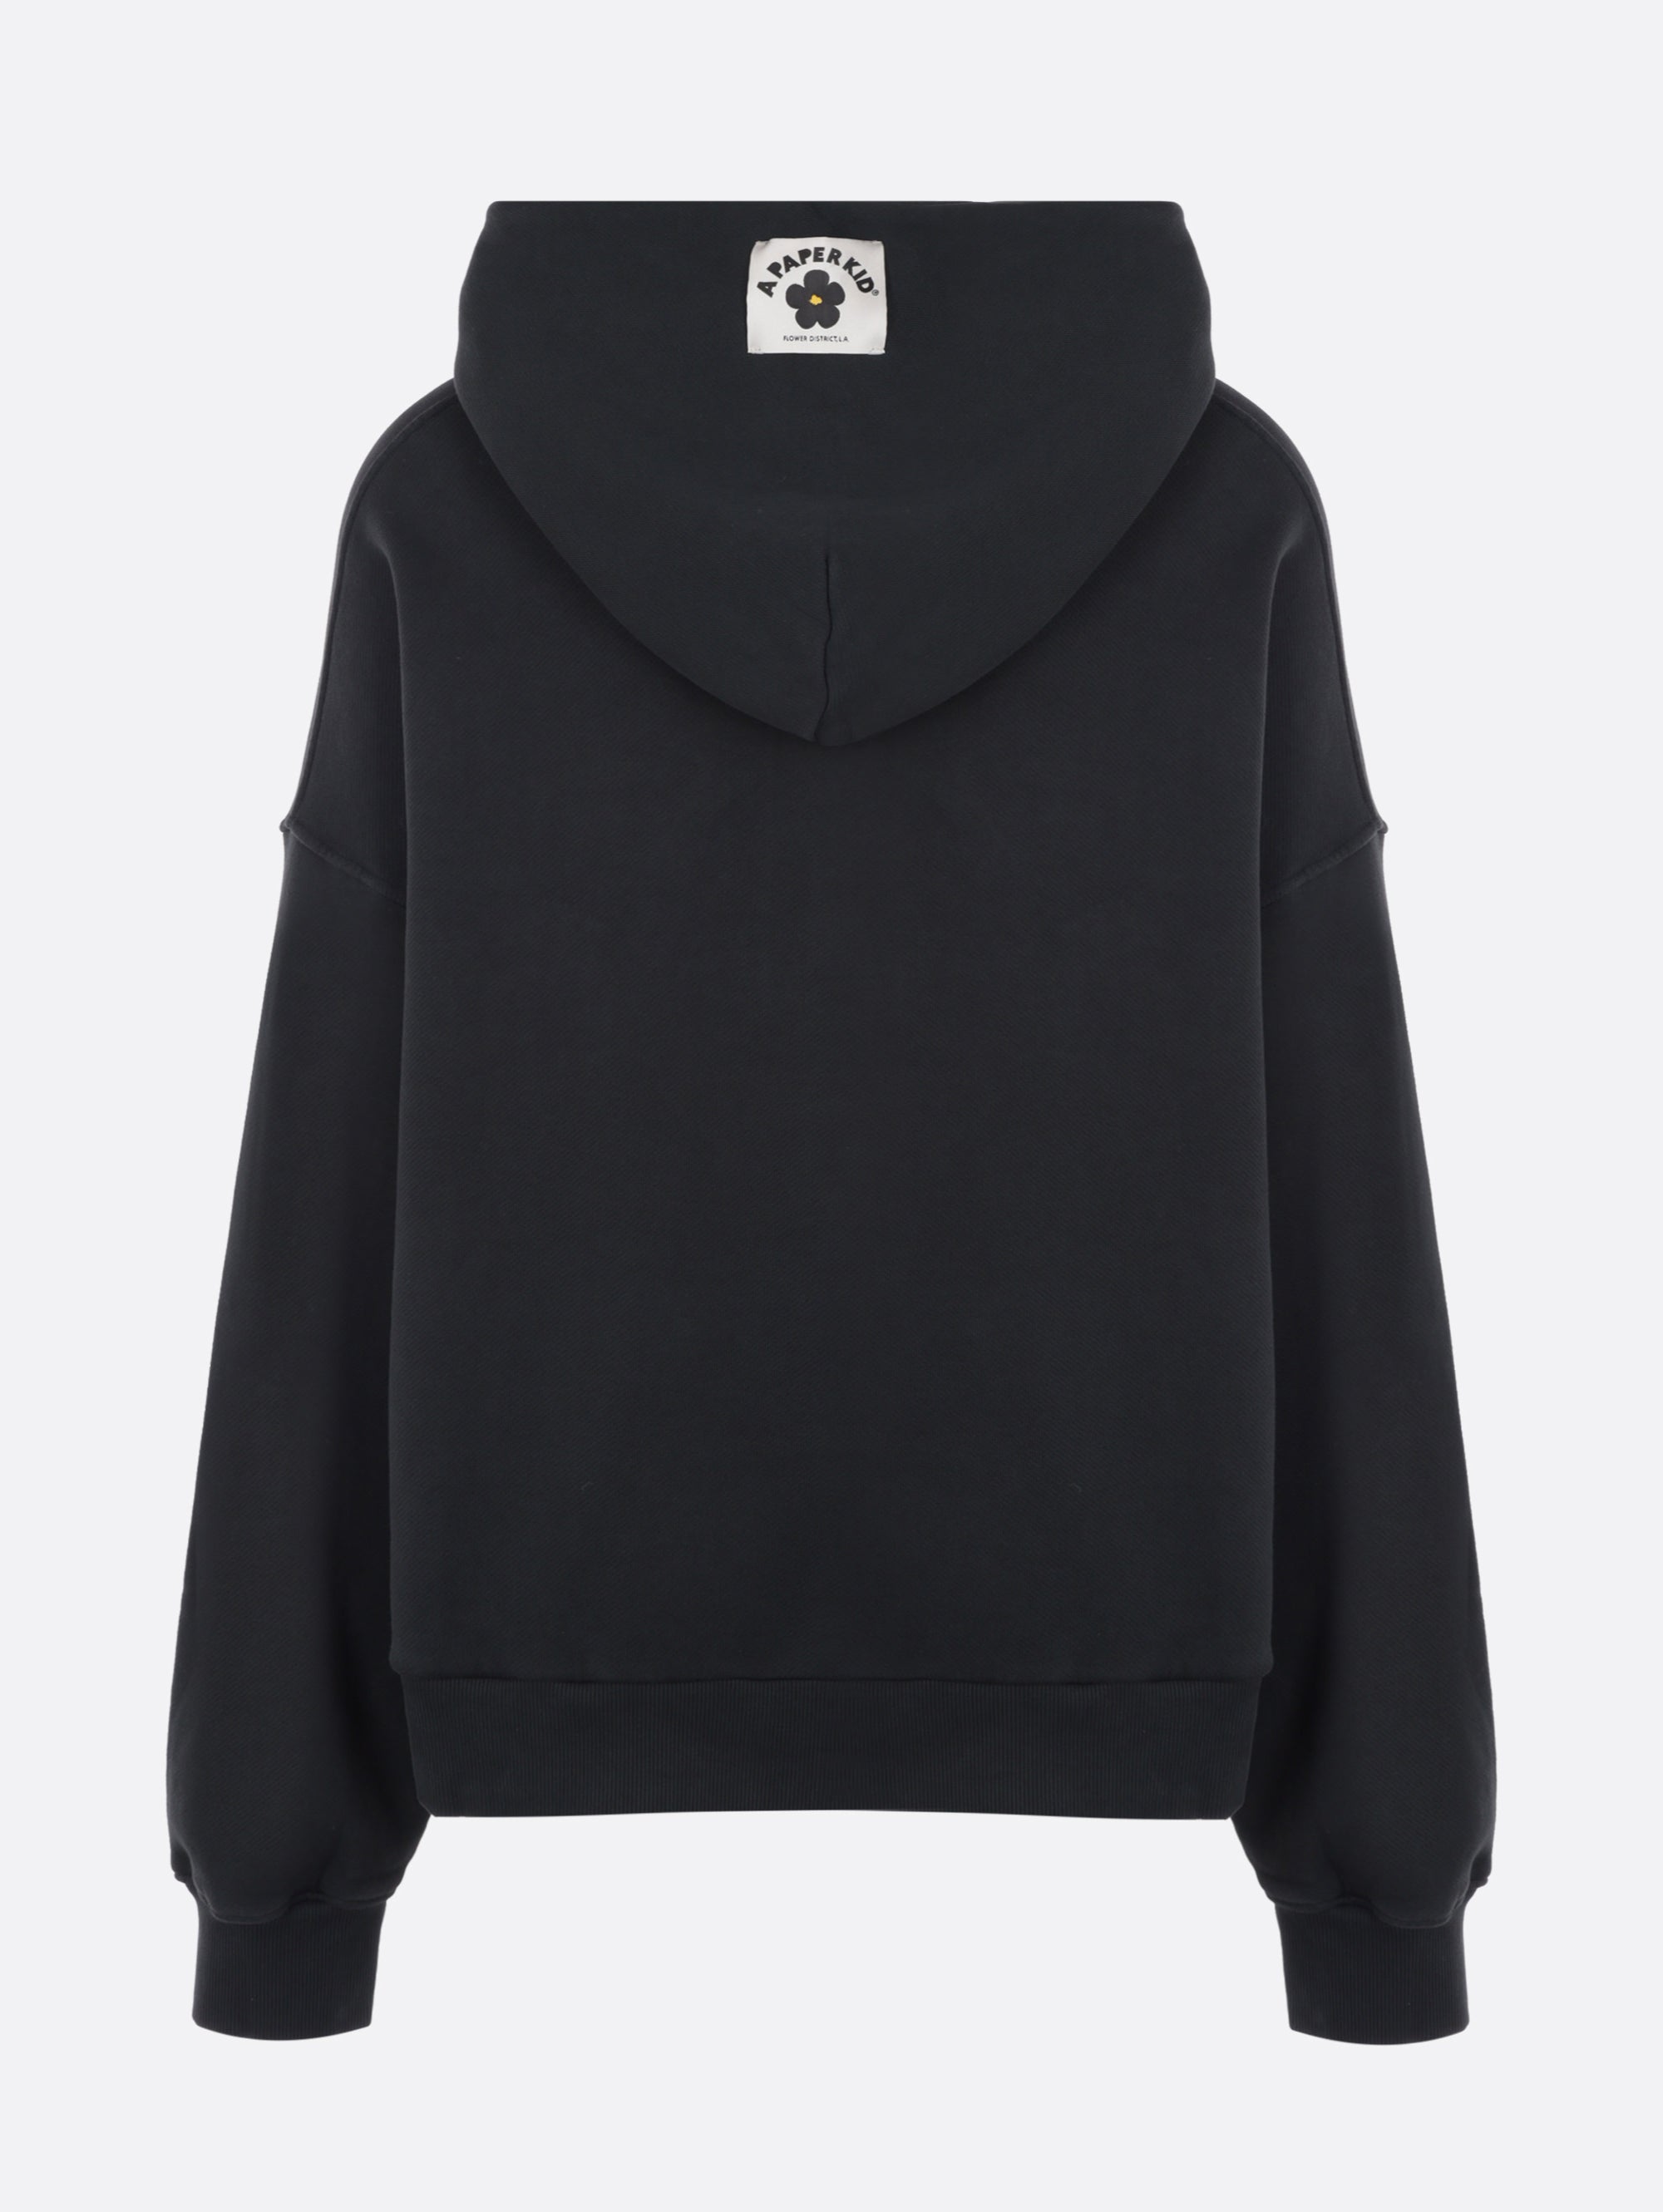 Sweatshirt with Black Hood